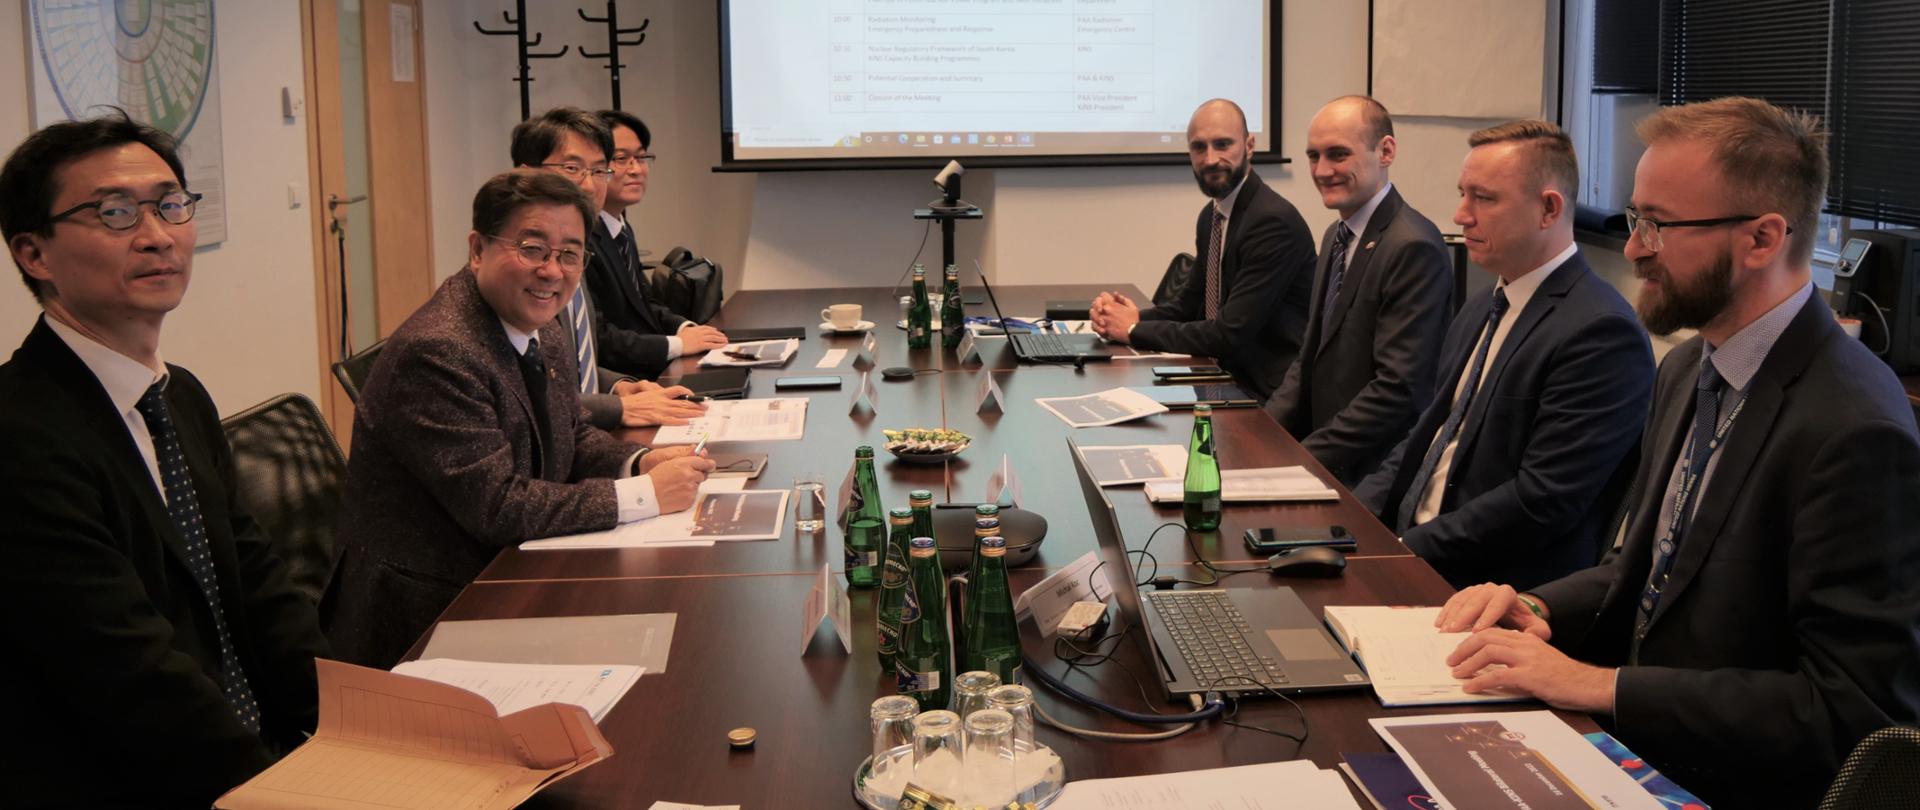 Spotkanie Państwowej Agencji Atomistyki i Koreańskiego Instytutu Bezpieczeństwa Jądrowego w siedzibie PAA - obie delegacji siedzą przy stole.